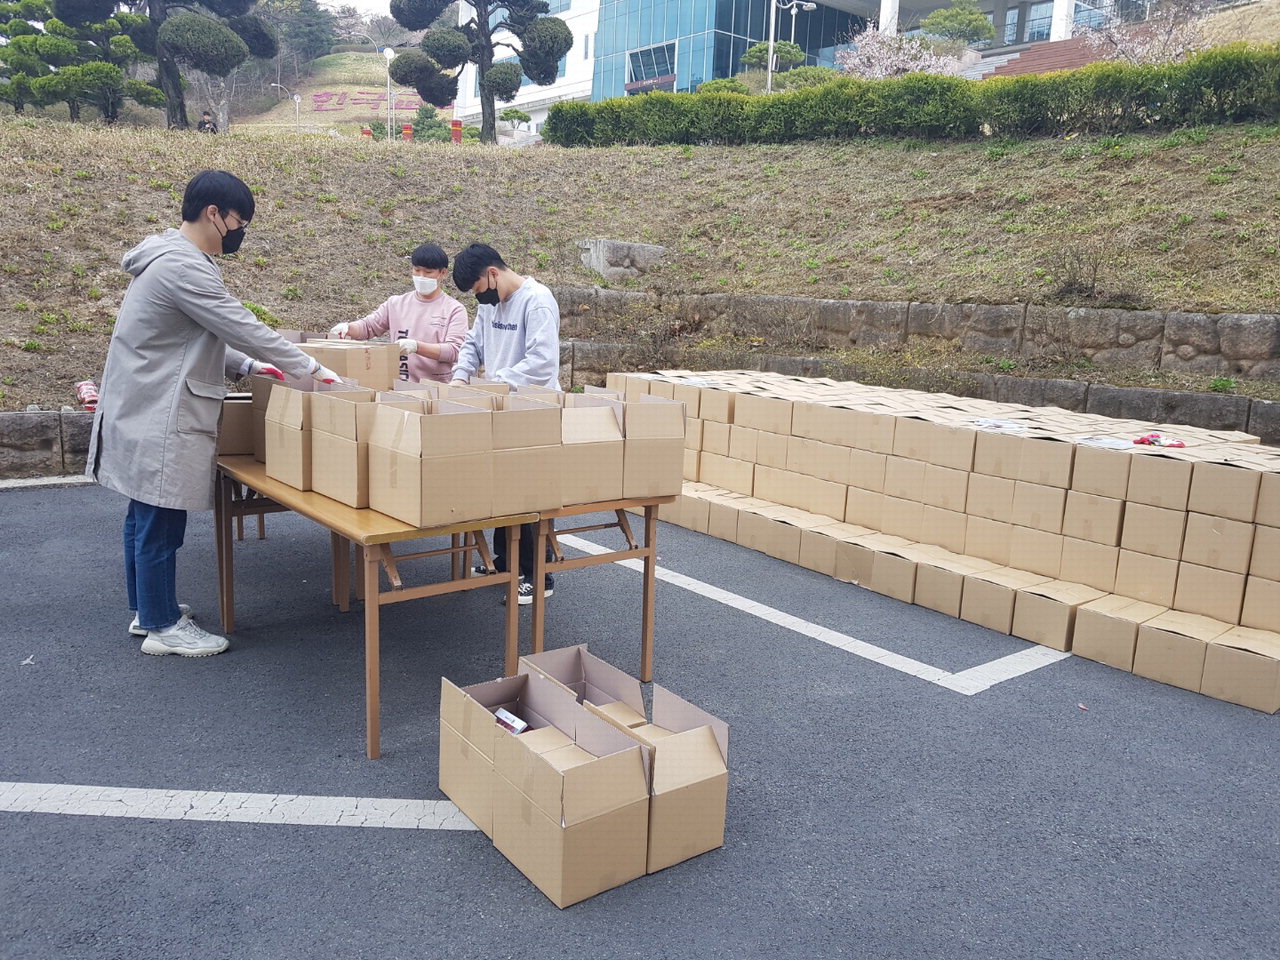 학교 관계자들이 신입생들에게 보낼 선물상자를 정리하고 있다./ 한국교통대 제공